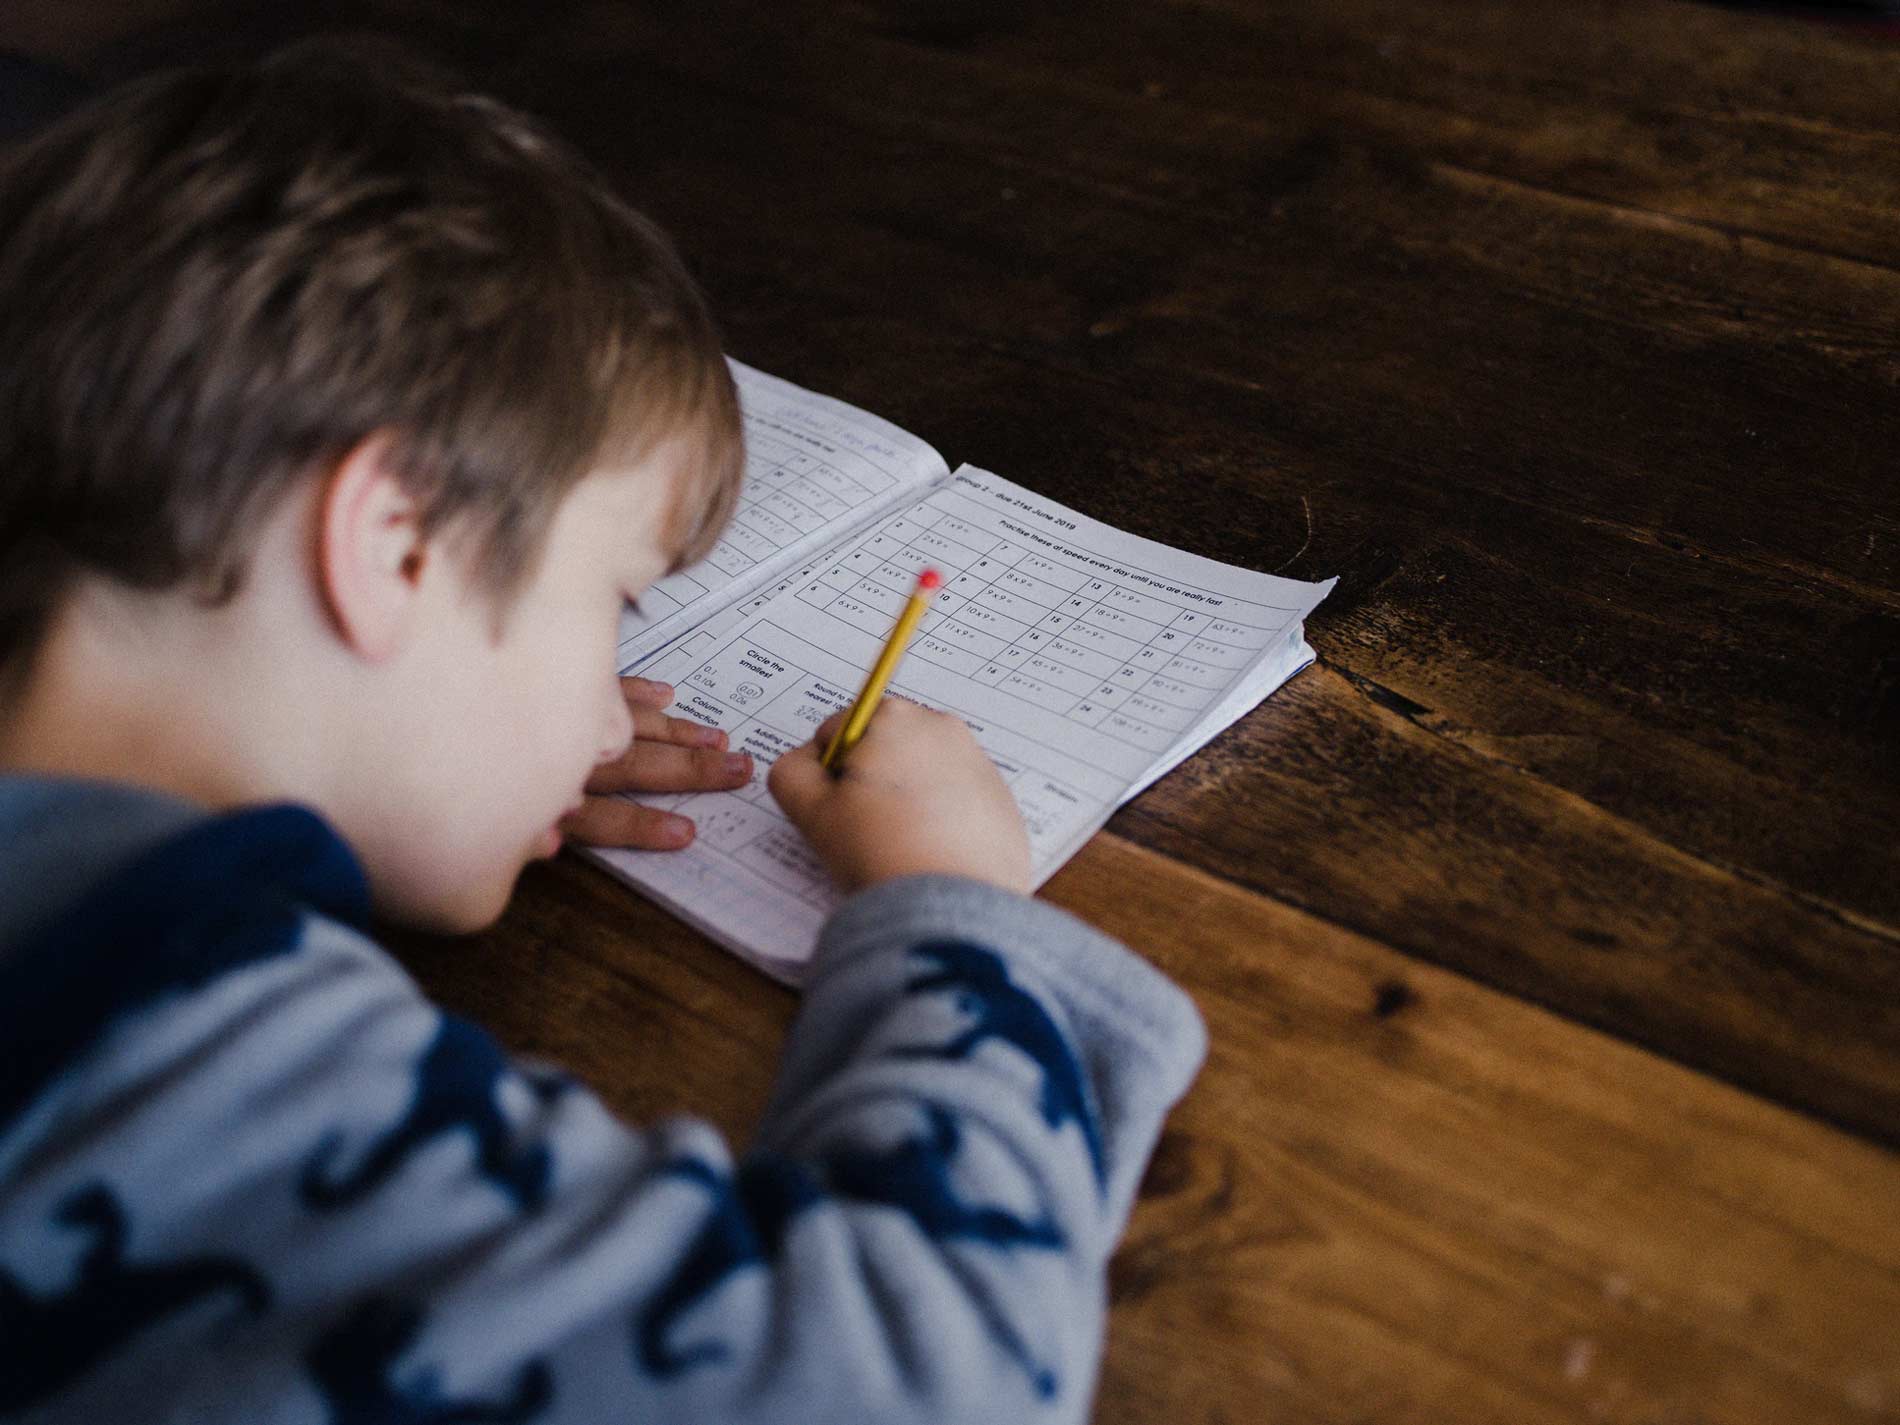 La batalla de los deberes: pautas para librarla con éxito y sin desgaste